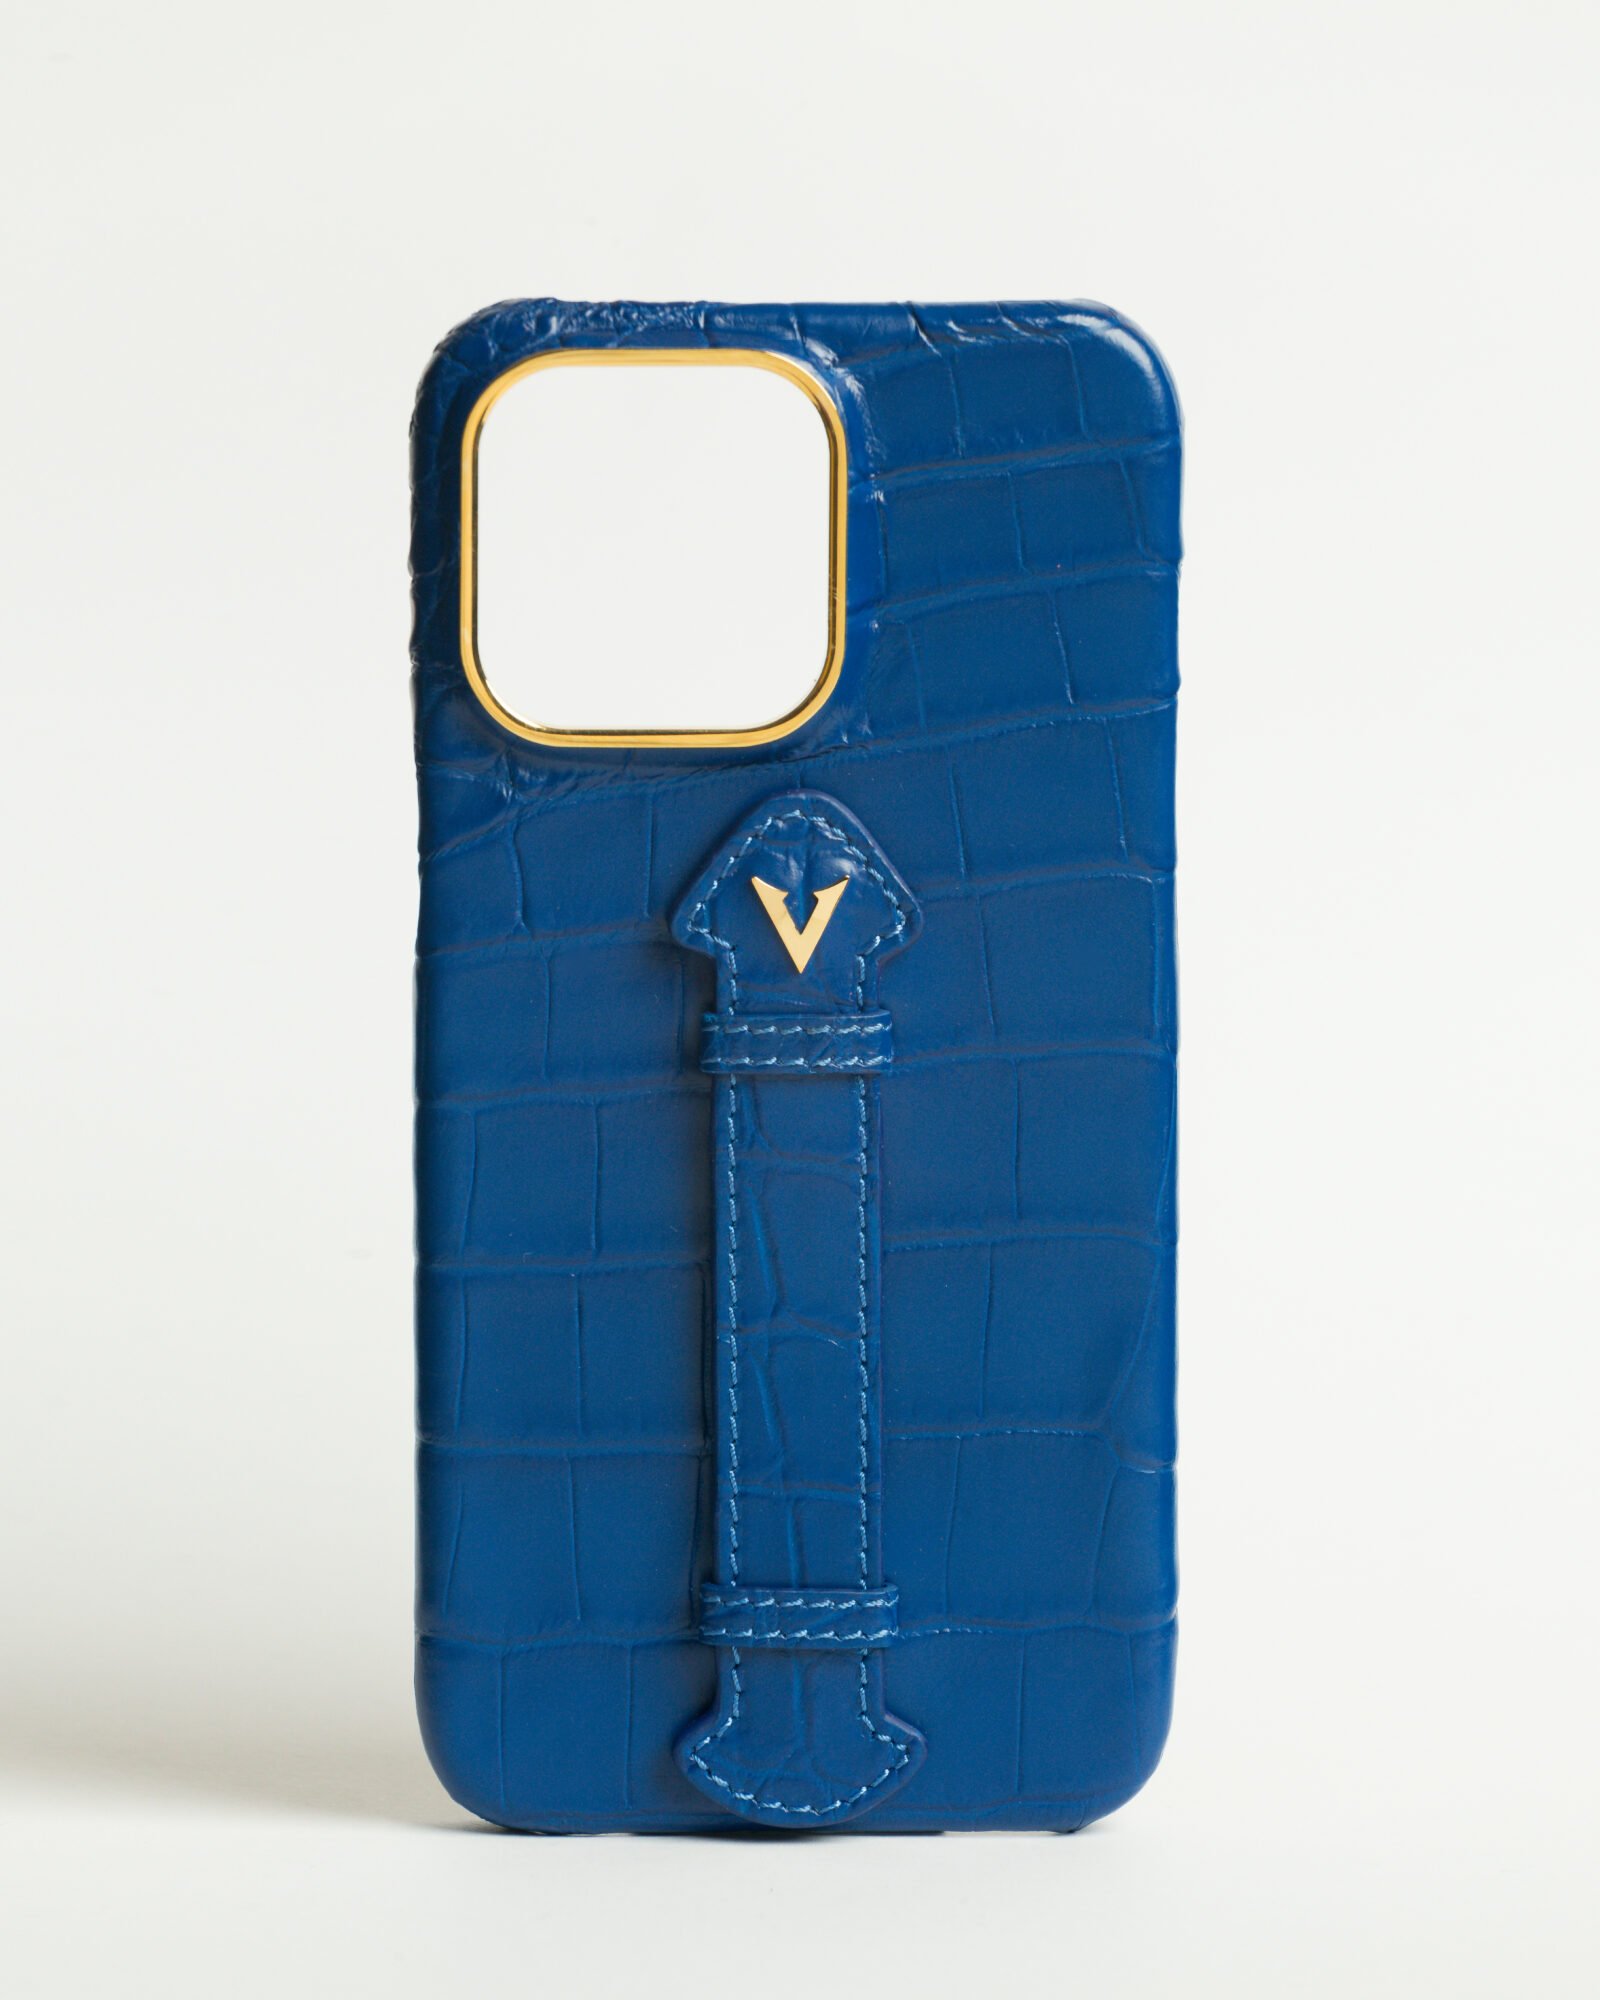 Luxury Royal Blue Crocodile leather Iphone case